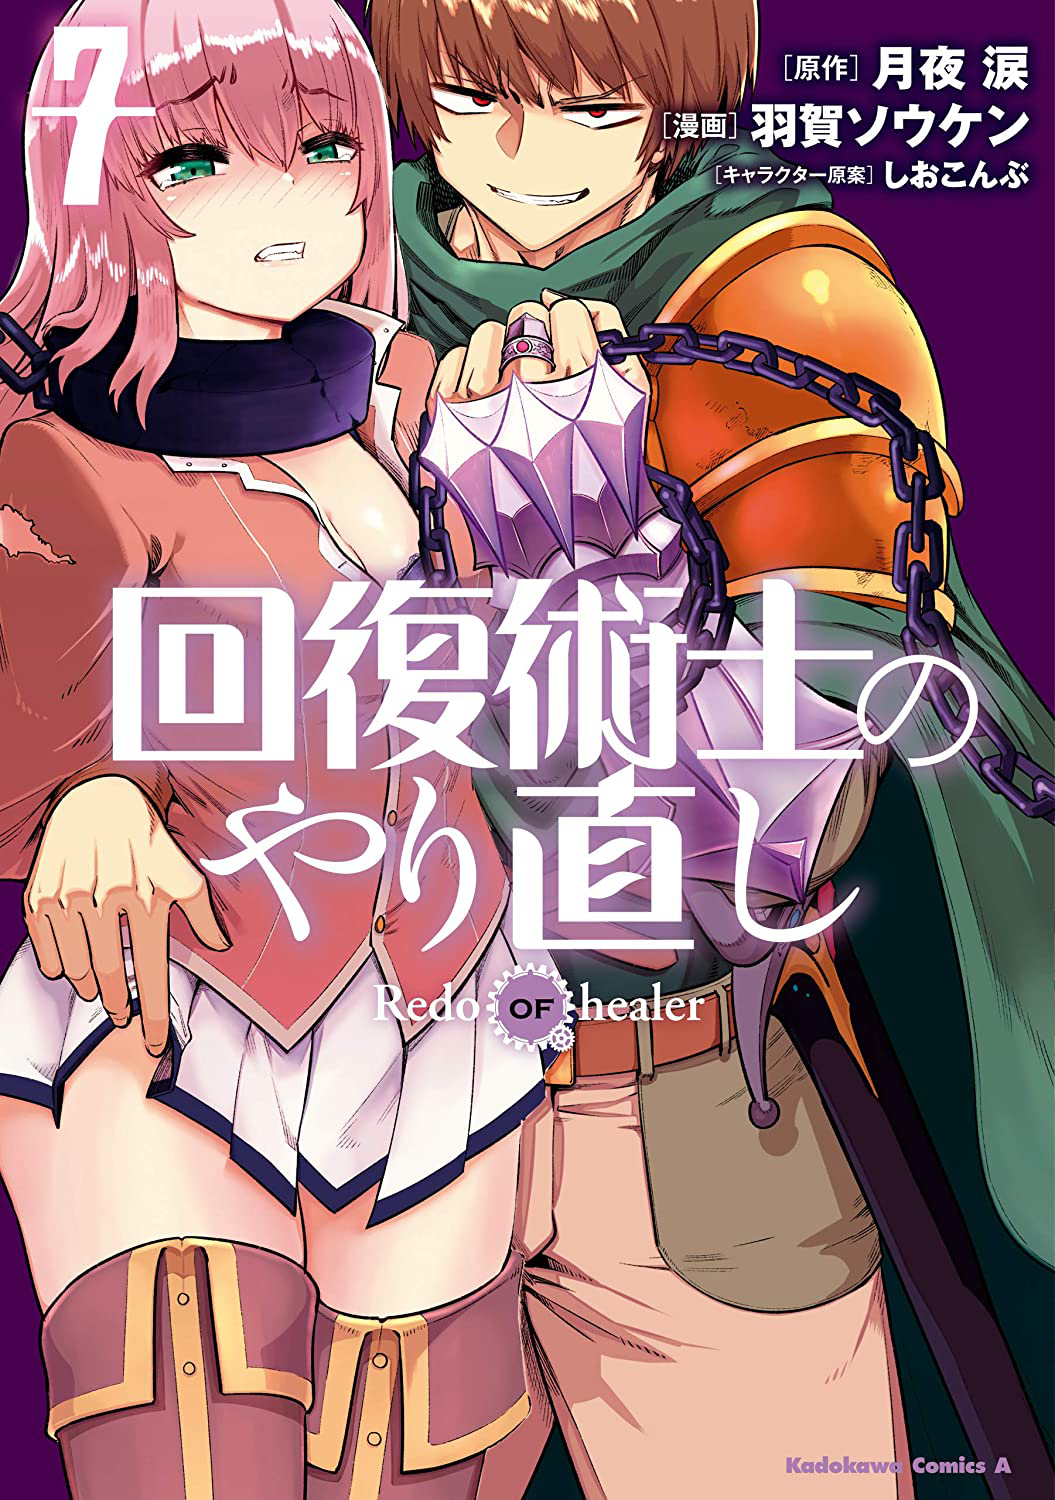 Redo Of The Healer Manga Manga Volume 7 | Kaifuku Jutsushi no Yarinaoshi Wiki | Fandom